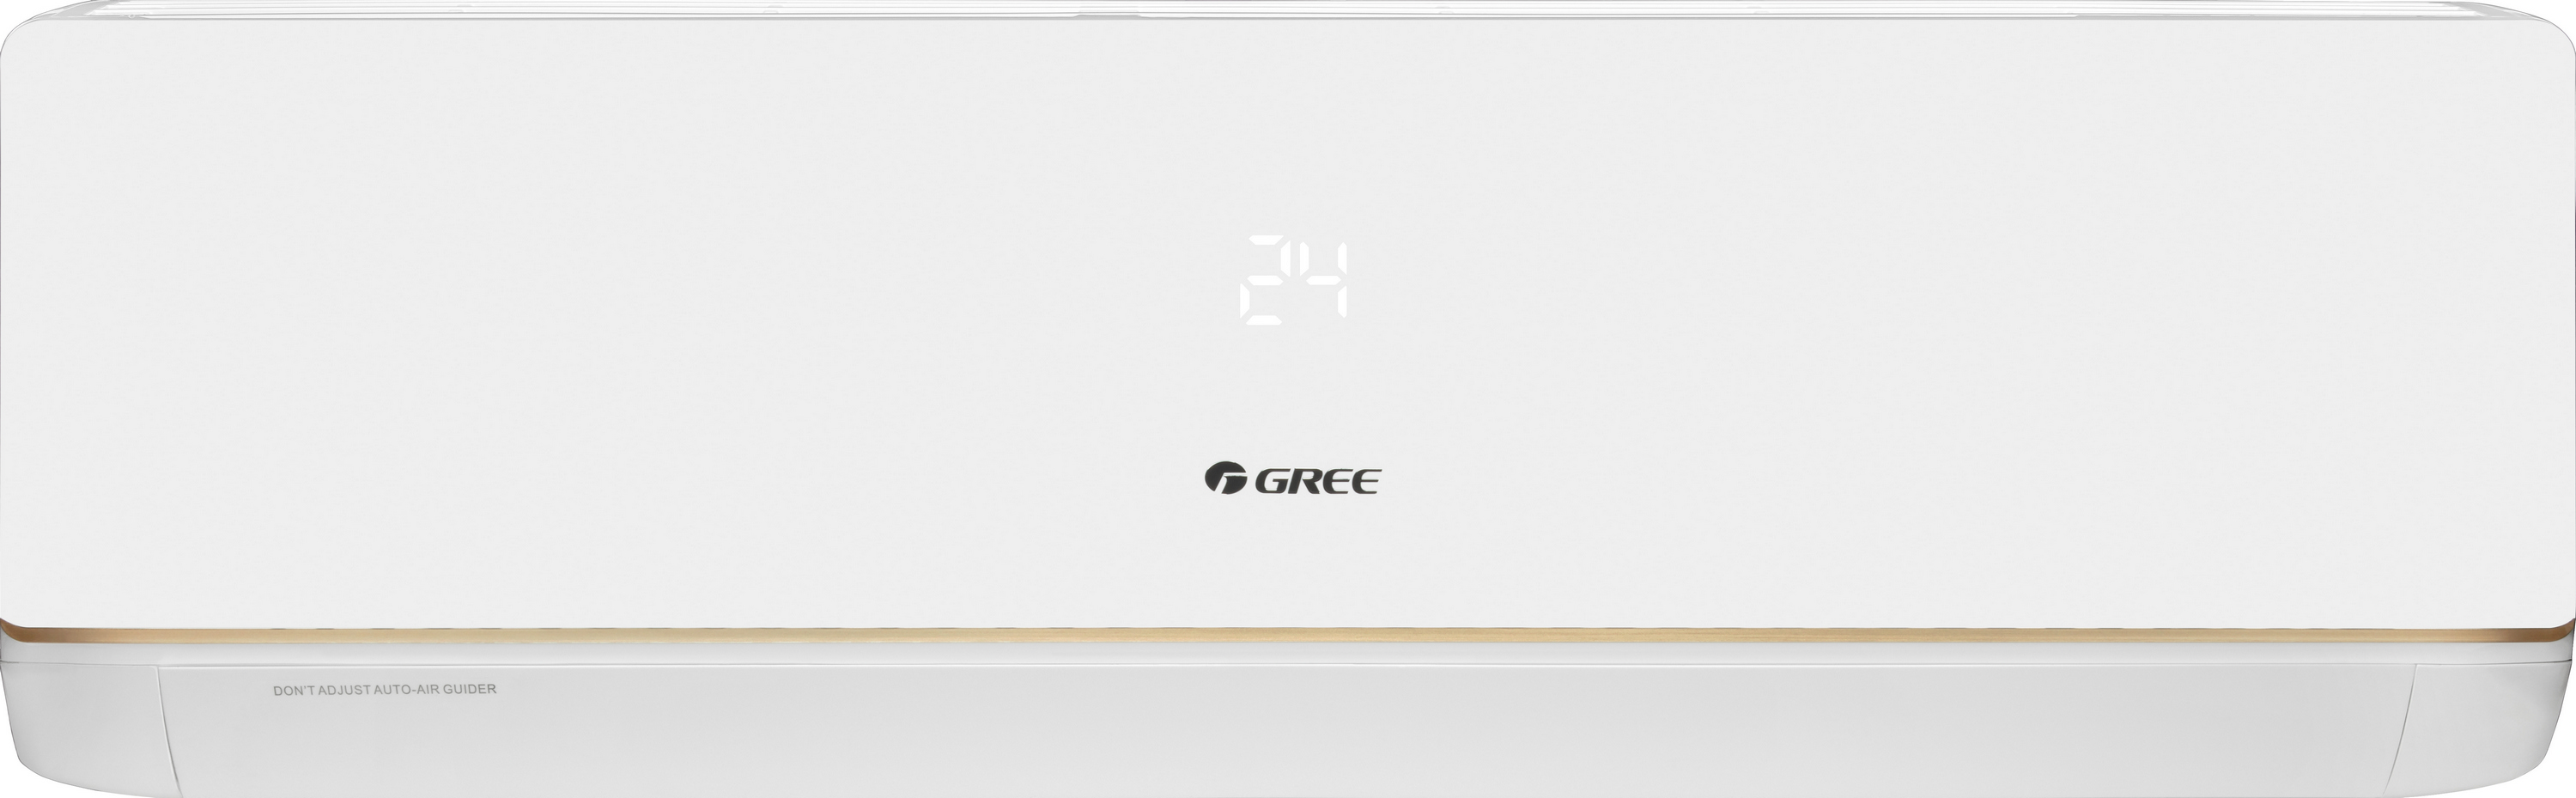 Кондиціонер спліт-система Gree Bora Inverter R32 GWH07AAA-K6DNA5C Wi-Fi ціна 20200 грн - фотографія 2